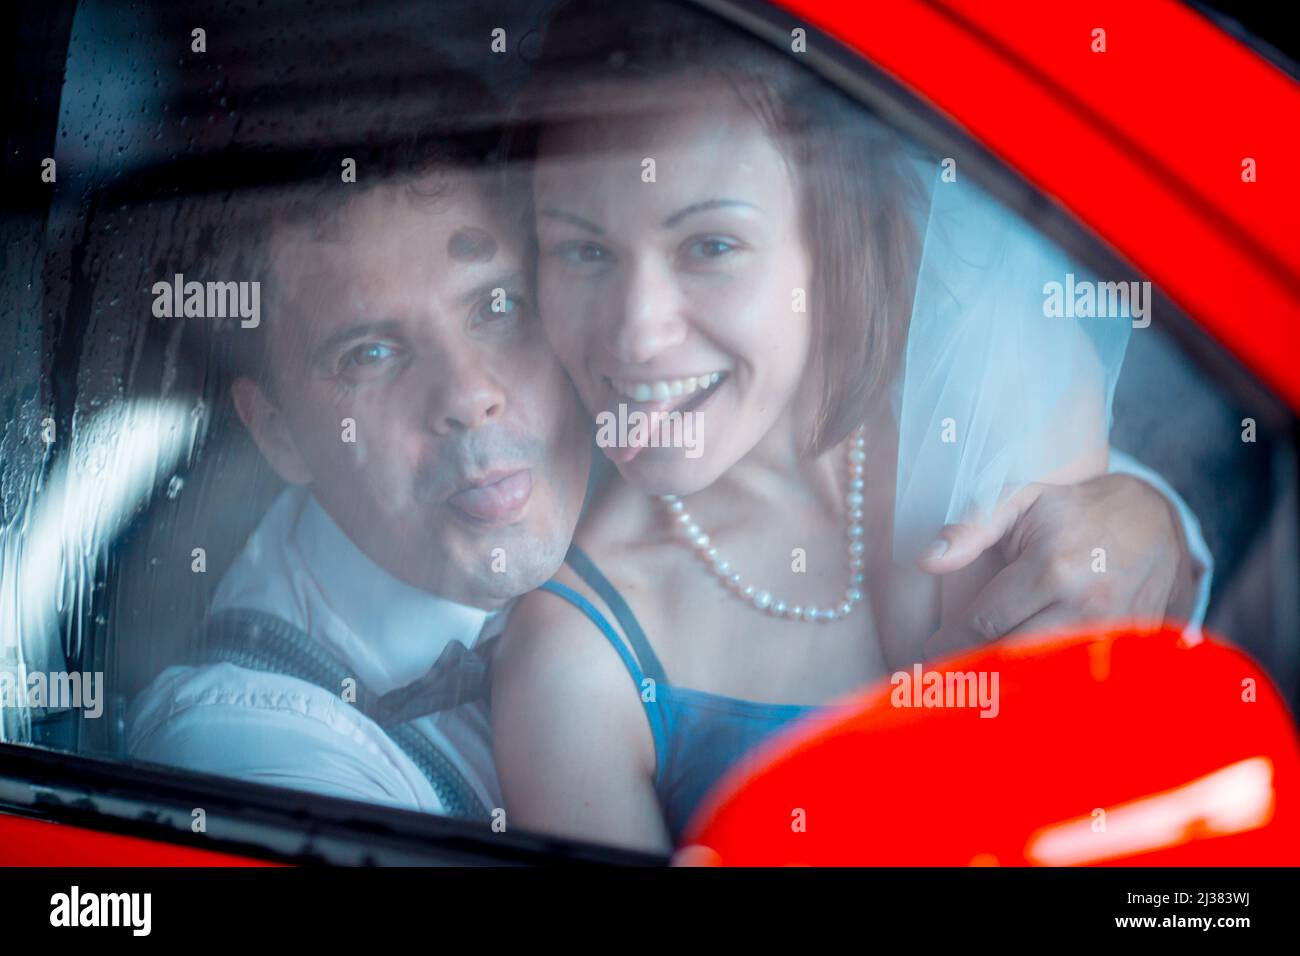 Ritratto di una giovane coppia in abito da sposa che celebra il loro anniversario di matrimonio. La coppia sta lavando la macchina. Sorridi, bacia, amore. Foto Stock